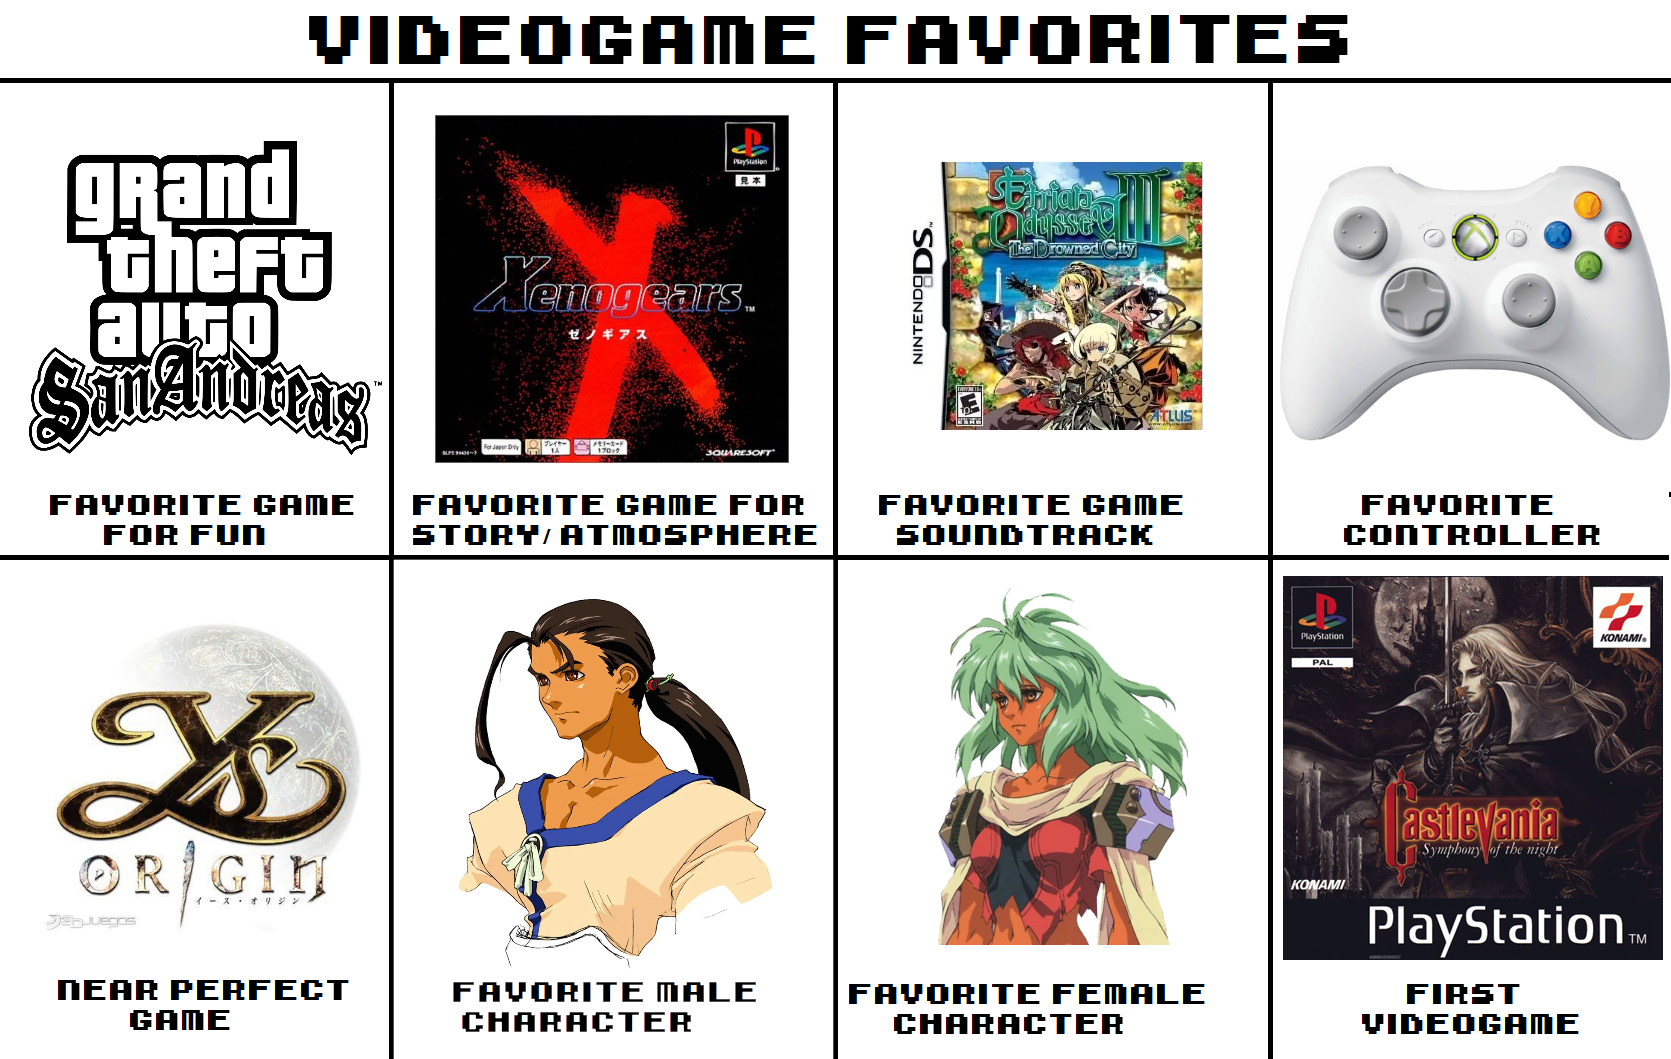 "VideoGames Favorites" Favorites